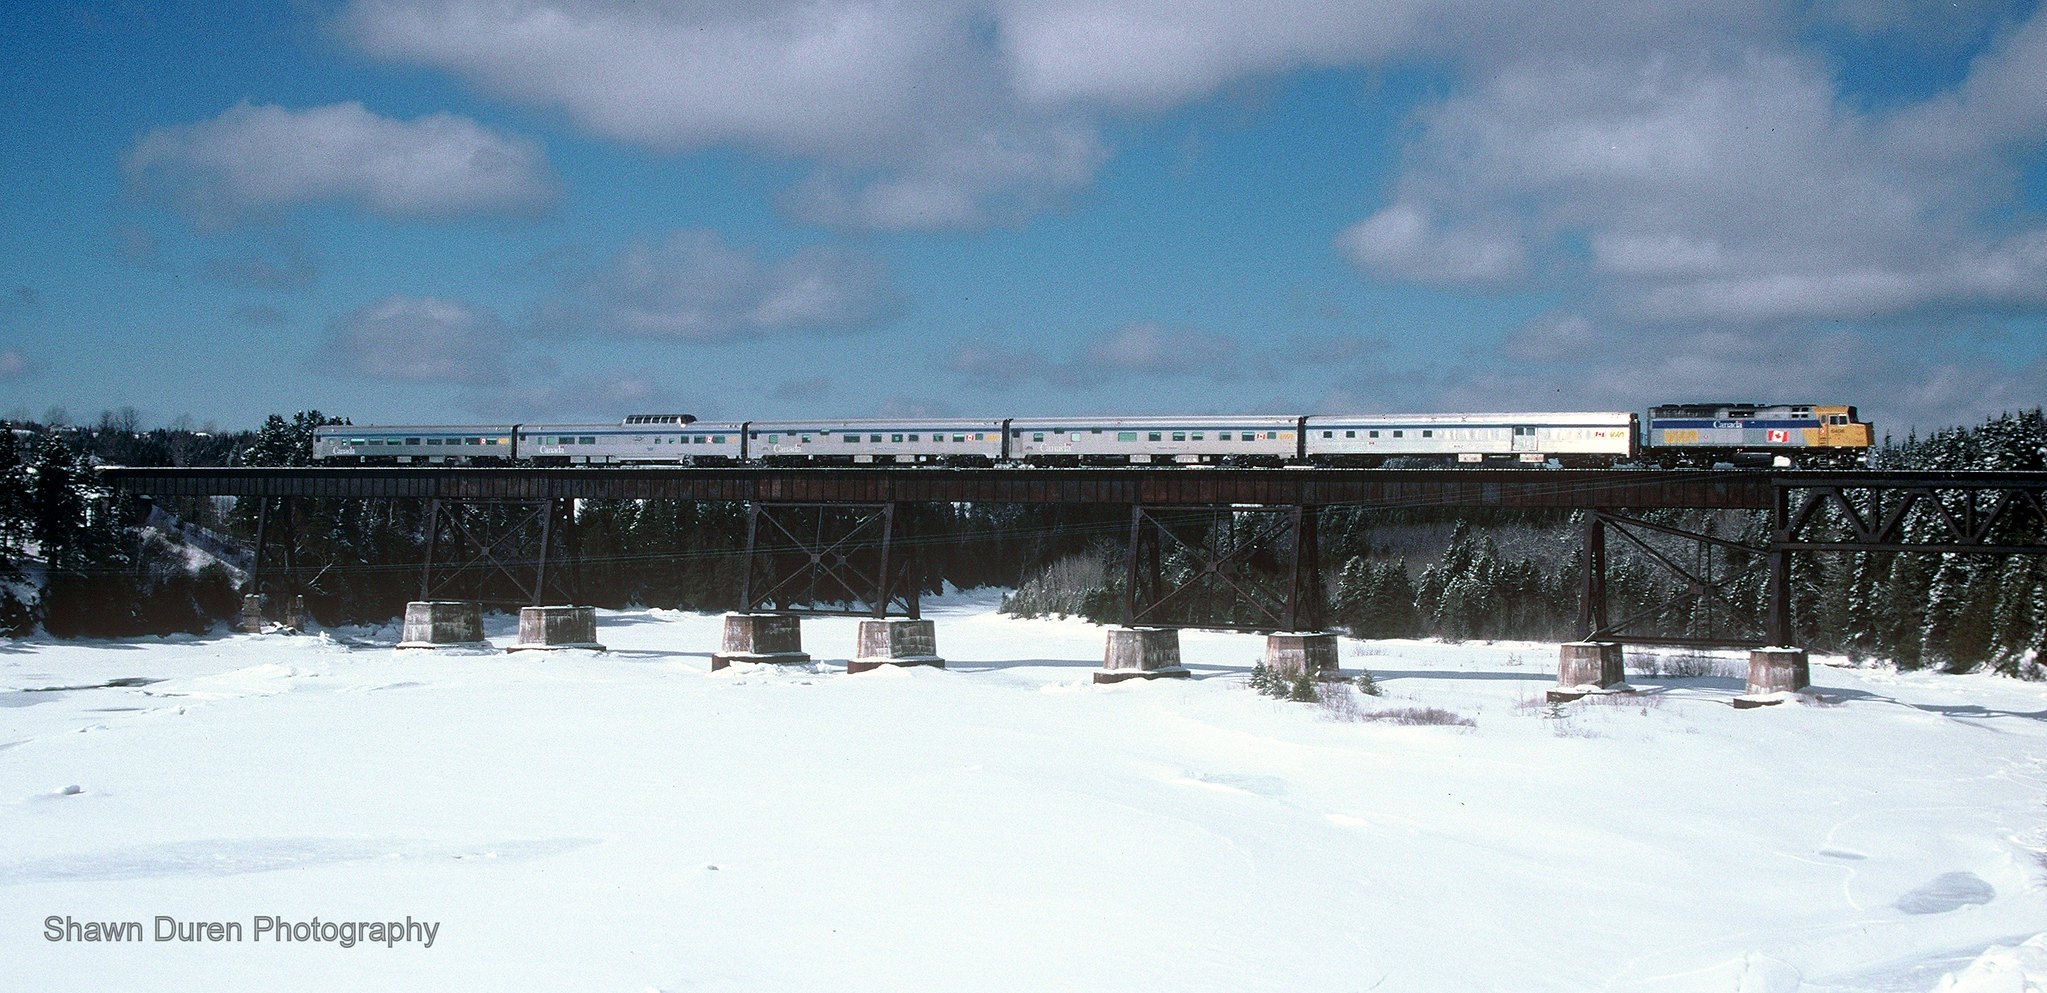 VIA Rail Train #16, the Chaleur crosses the trestle at Grande-Rivière, Quebec on March 22, 2004.